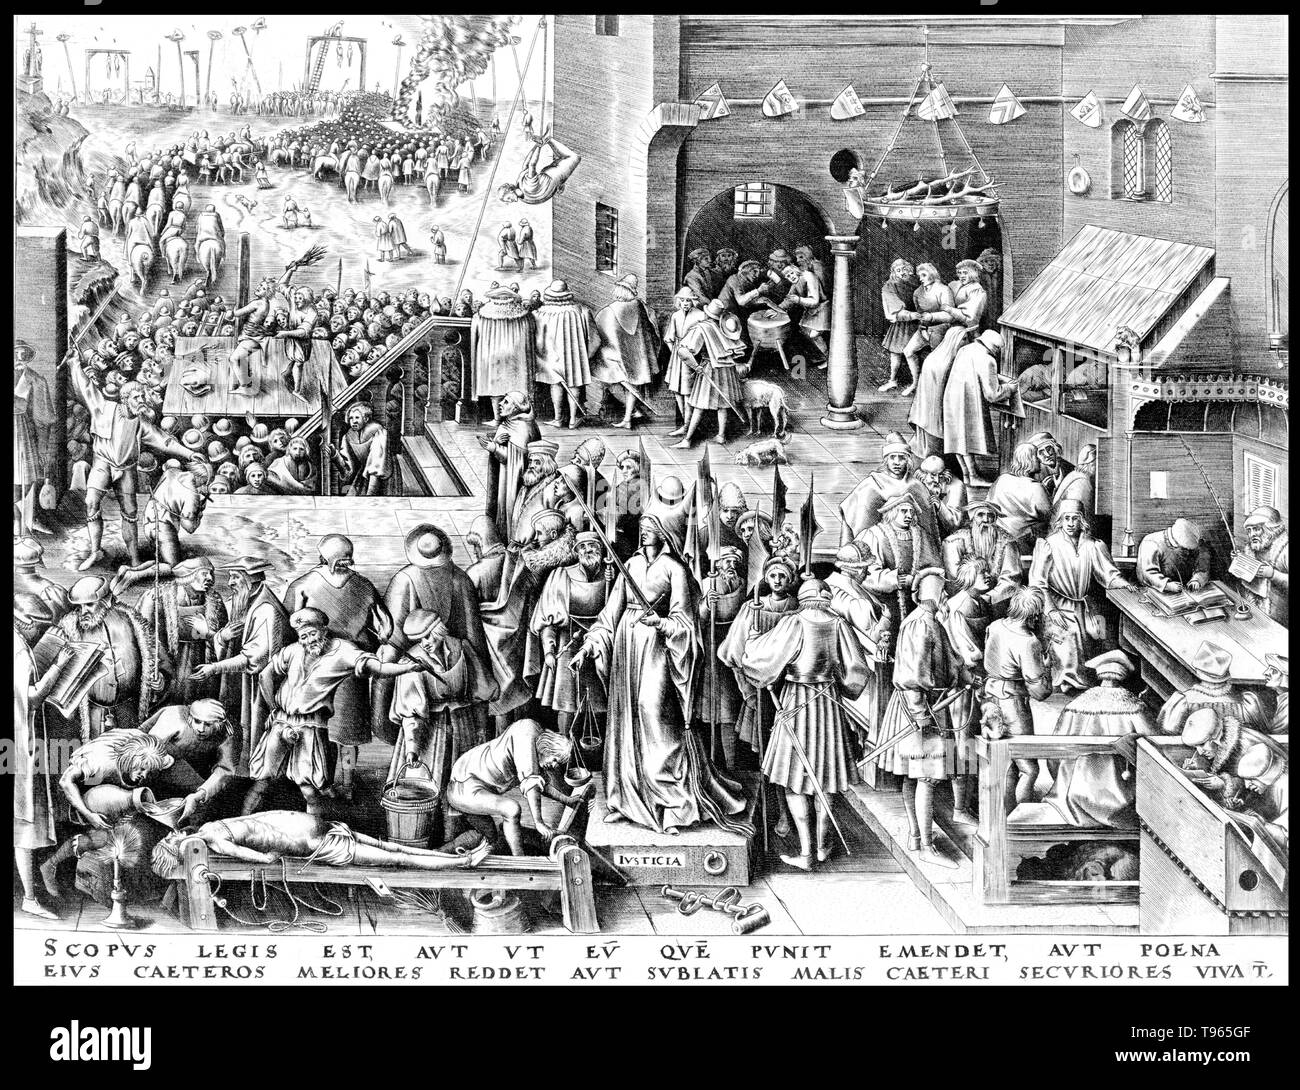 Gerechtigkeit steht mit verbundenen Augen, wie die Menschen um Sie herum gequält werden. Das lateinische Motto am Ende lautet: "Ziel des Gesetzes ist entweder durch Strafe, der bestraft wird, oder die anderen durch sein Beispiel, oder der Allgemeinheit zu schützen, indem die Überwindung des Bösen zu verbessern, zu korrigieren." Pieter Bruegel der Ältere (1525/1530 - 9. September 1569) die größten war Maler und Grafiker des niederländischen und flämischen Renaissance Bewegung. Stockfoto